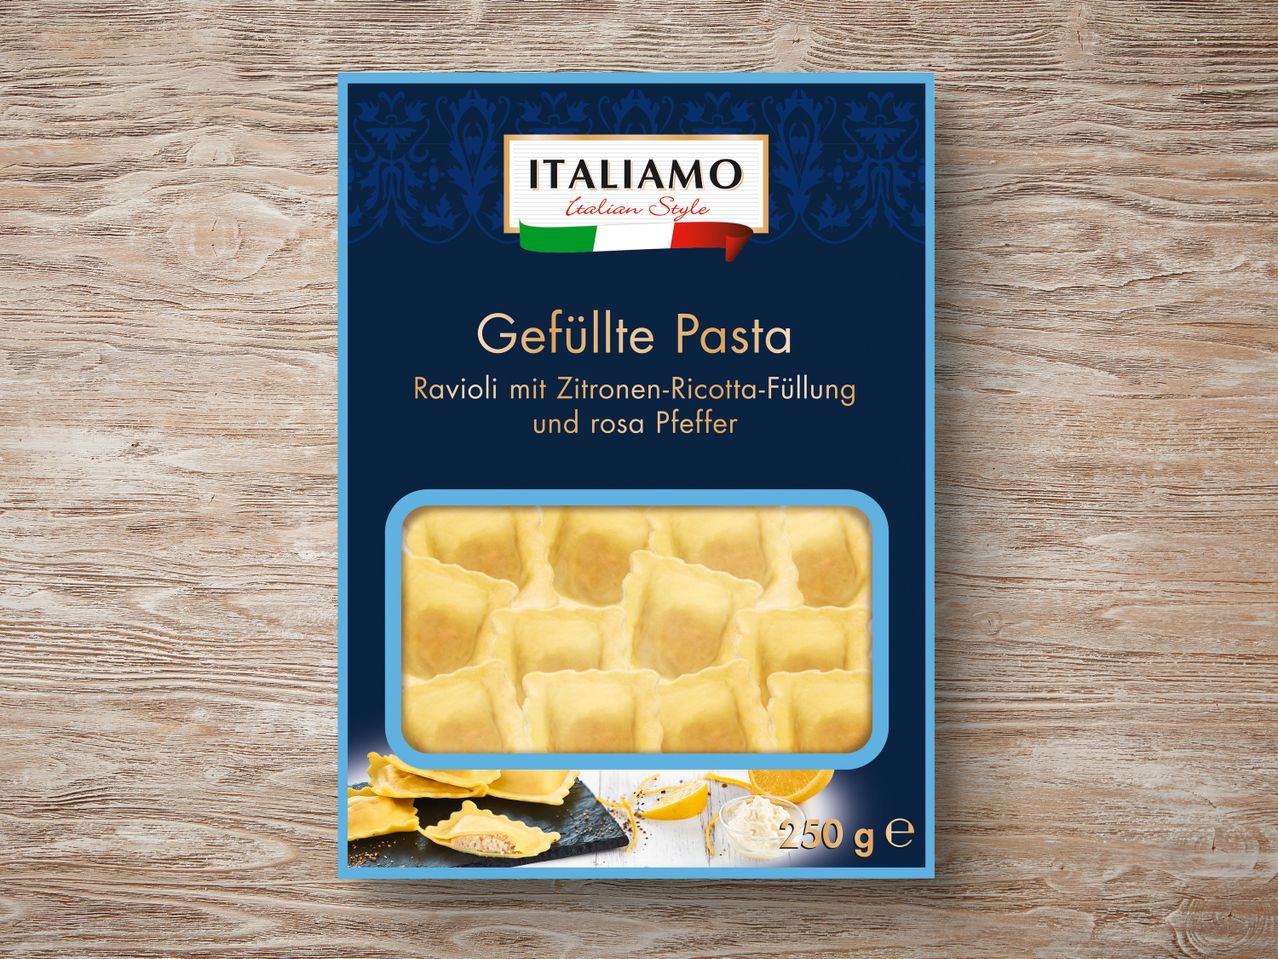 Italiamo Gefüllte Pasta Premium